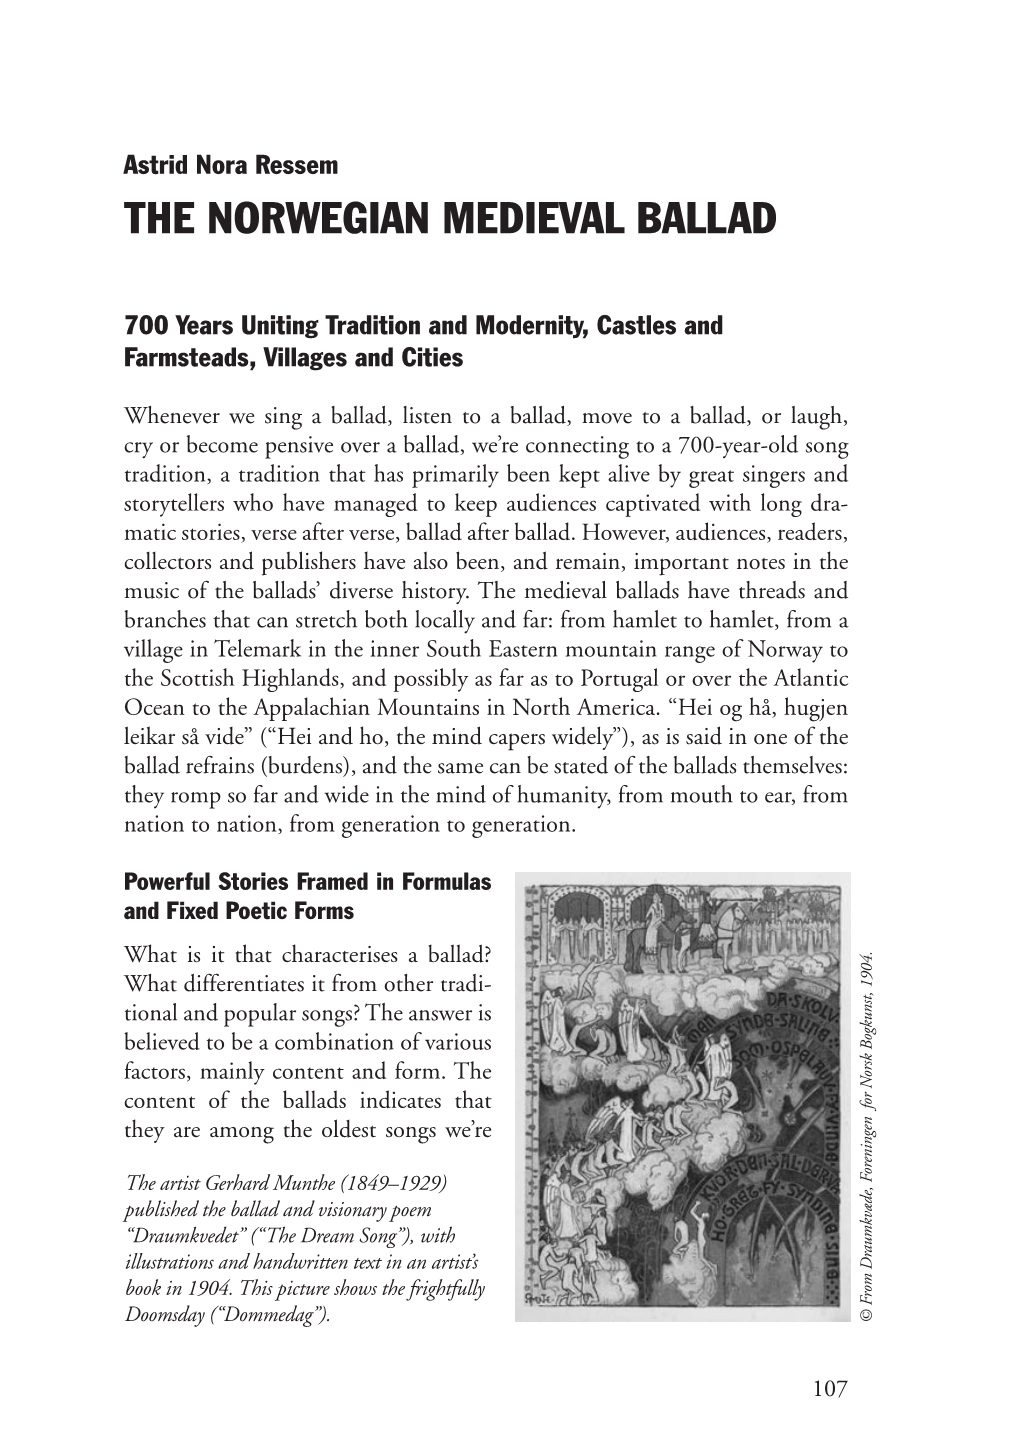 The Norwegian Medieval Ballad